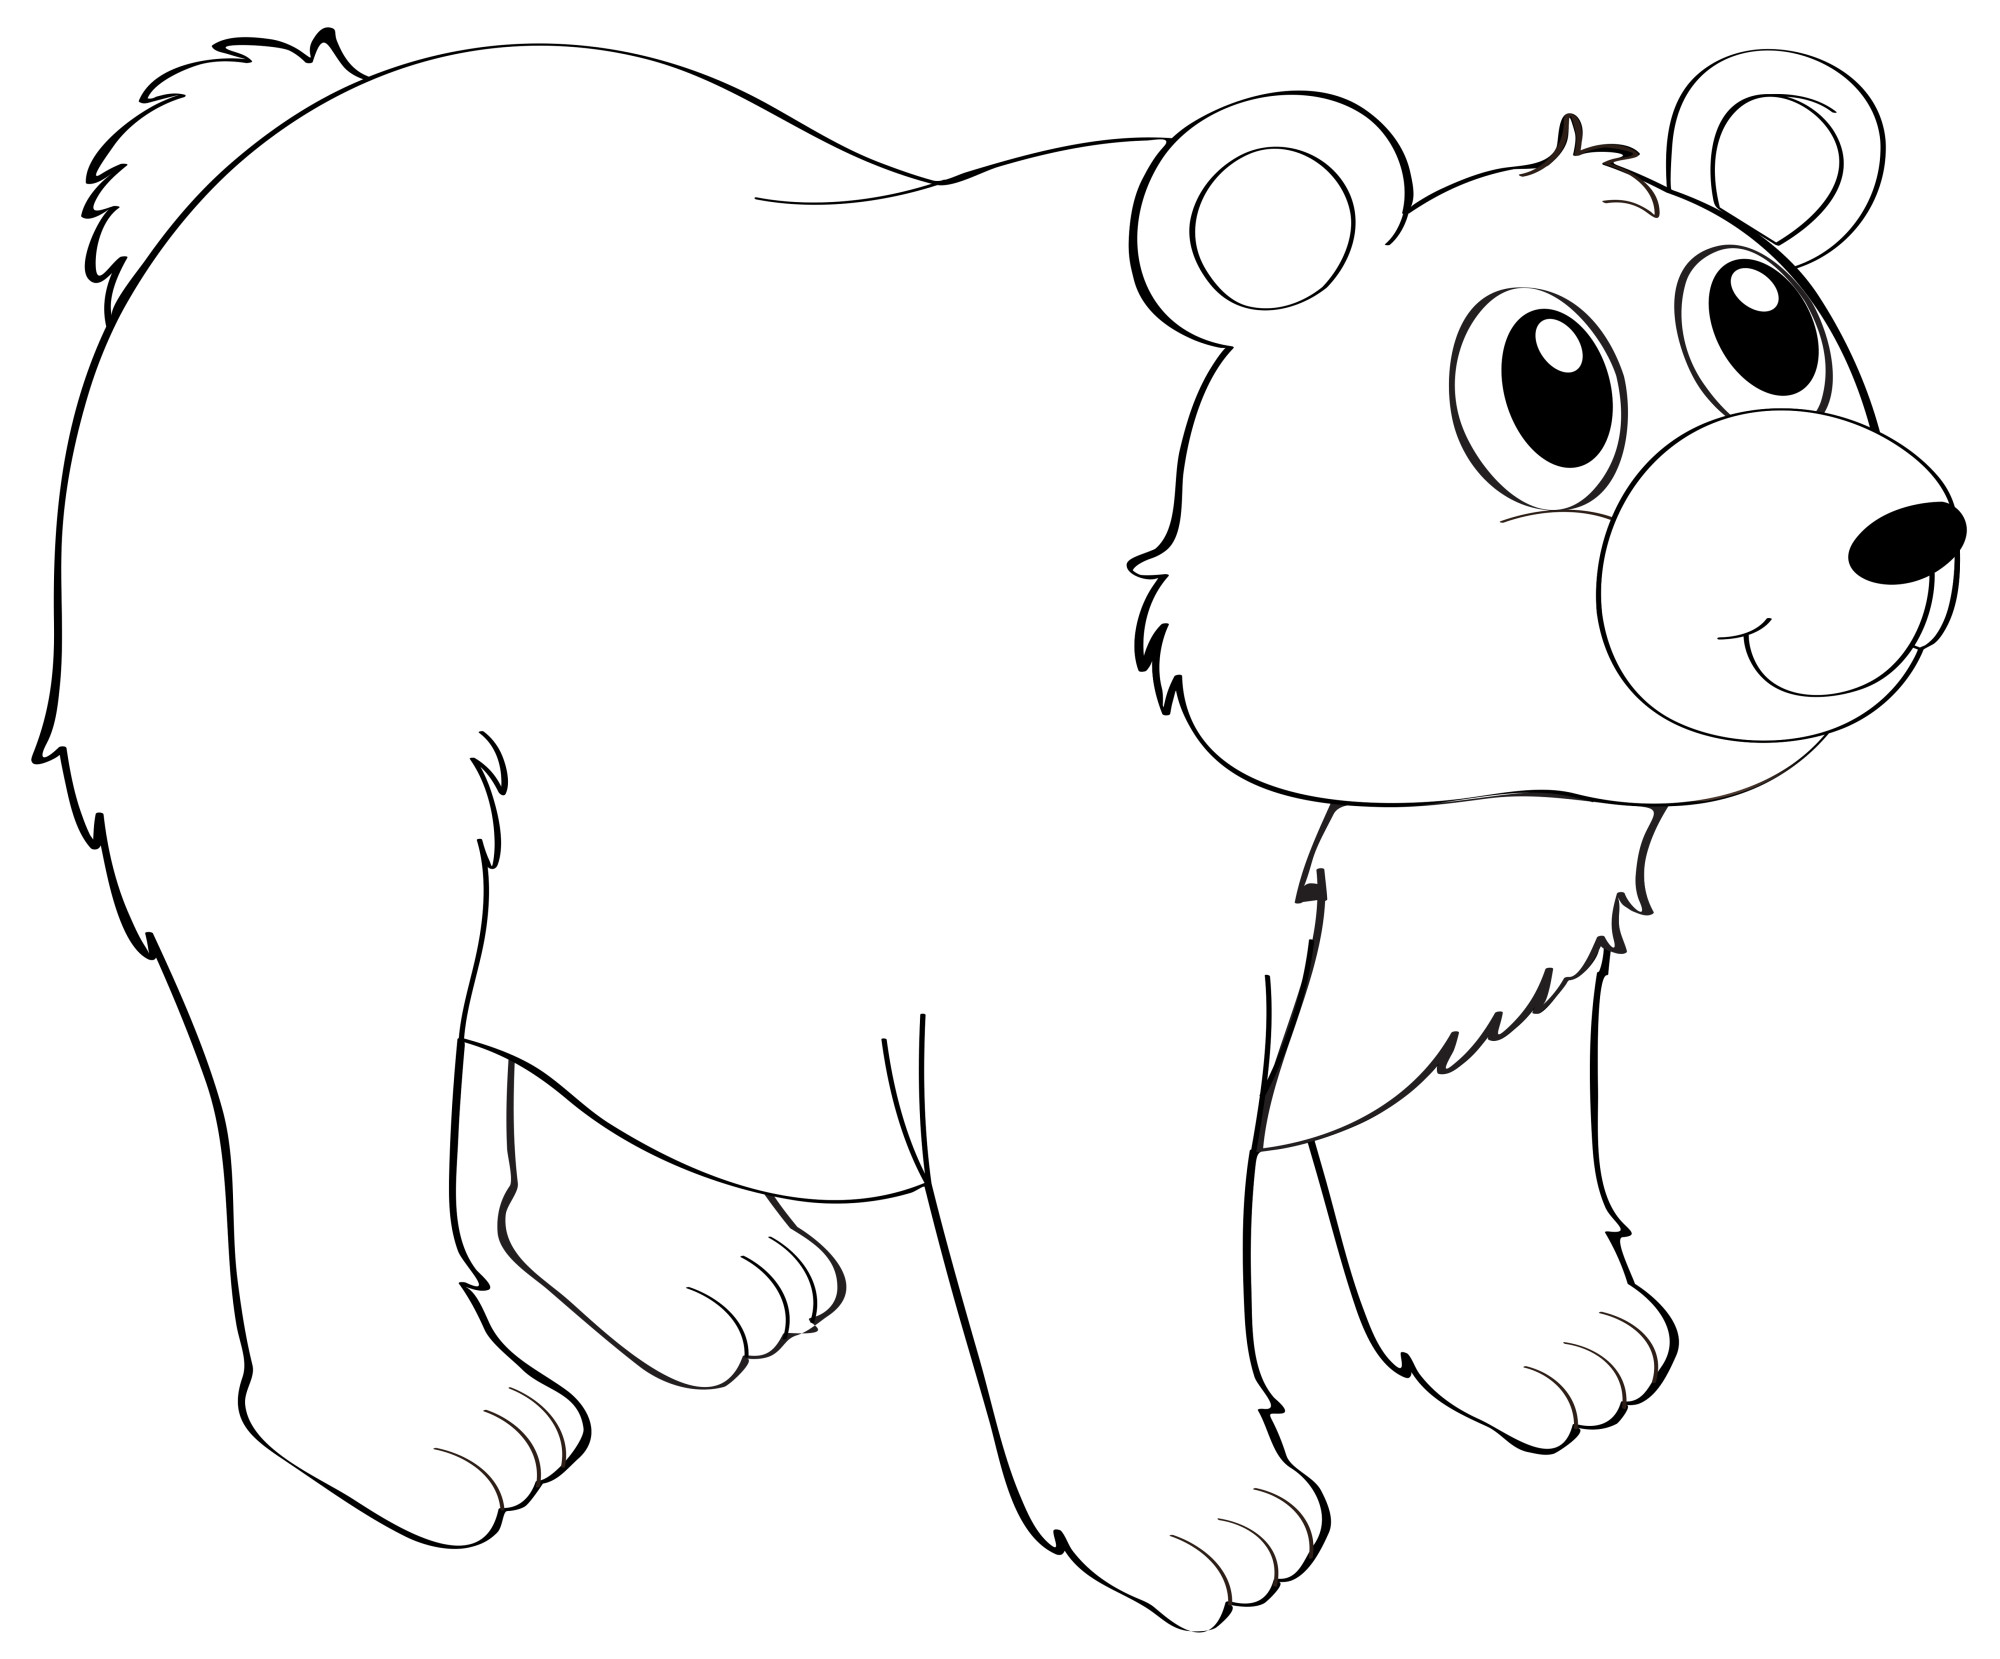 Раскраска для детей: сказочный медведь с большими добрыми глазами